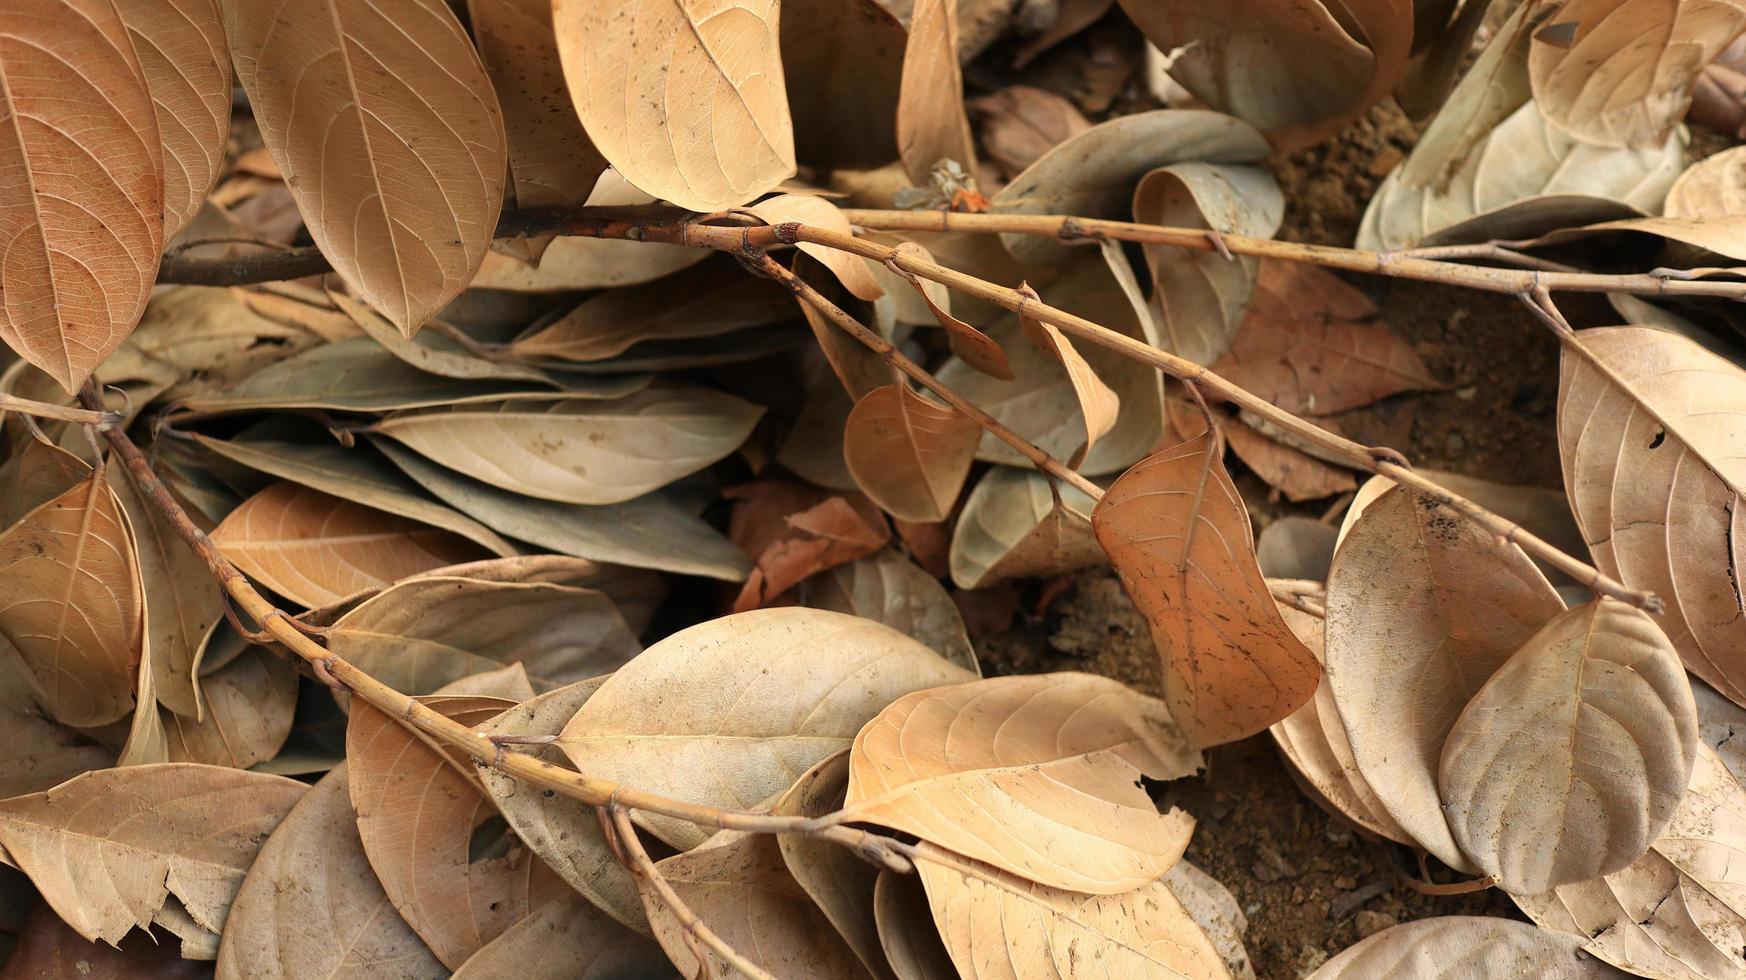 secco marcio jackfruit le foglie spargimento di il terra foto